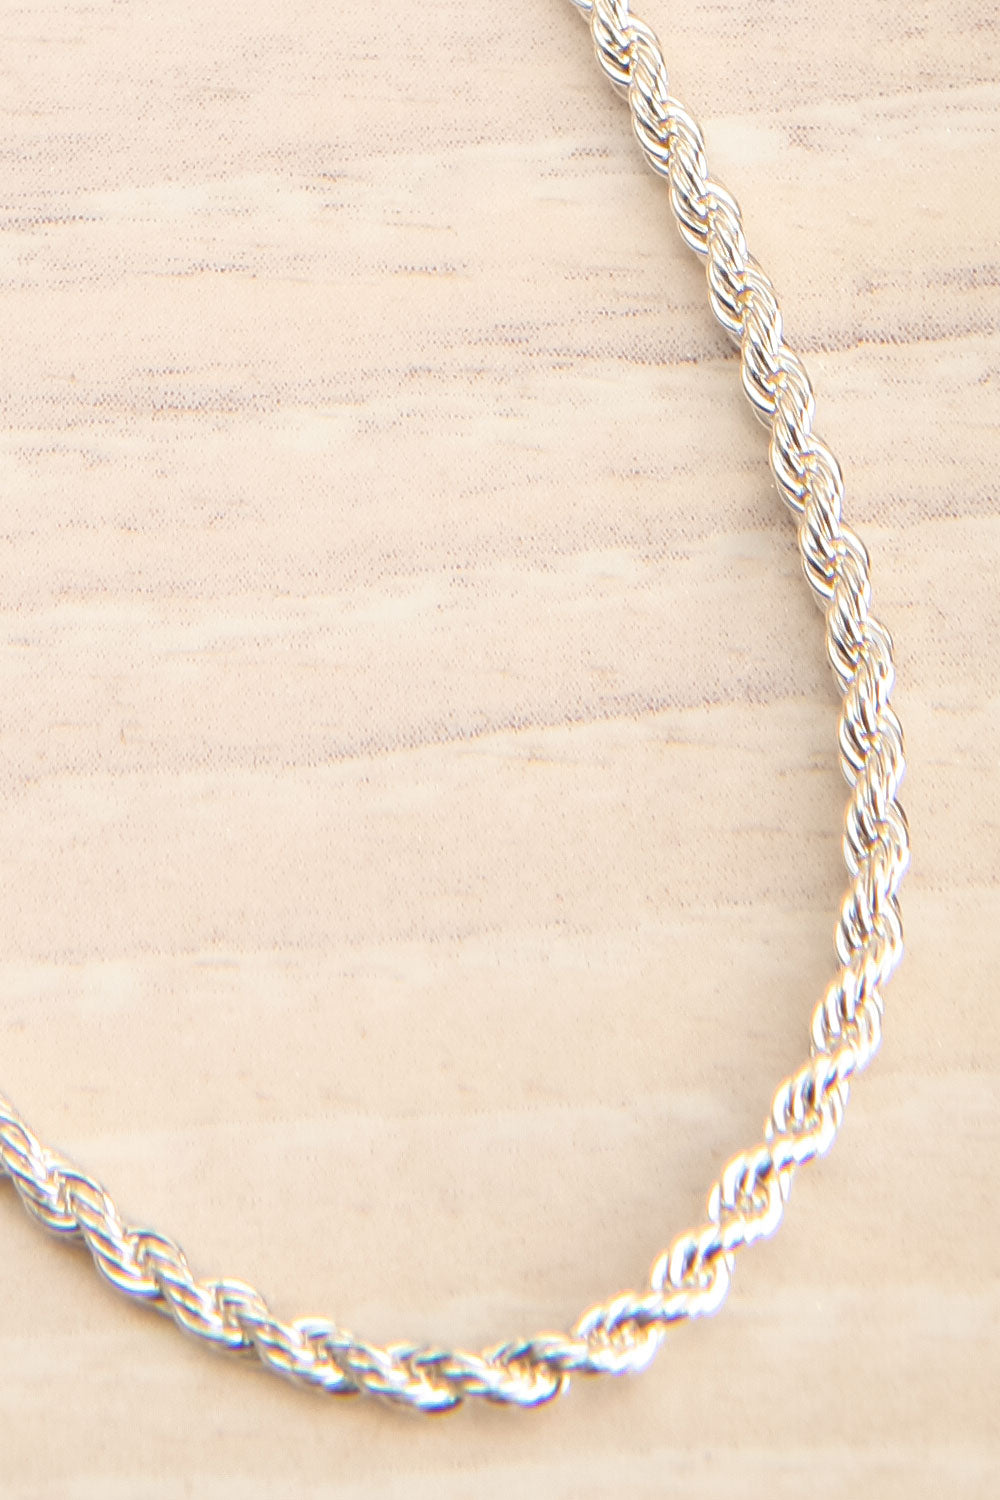 Cognassier Silver Chain Necklace | La petite garçonne flat close-up